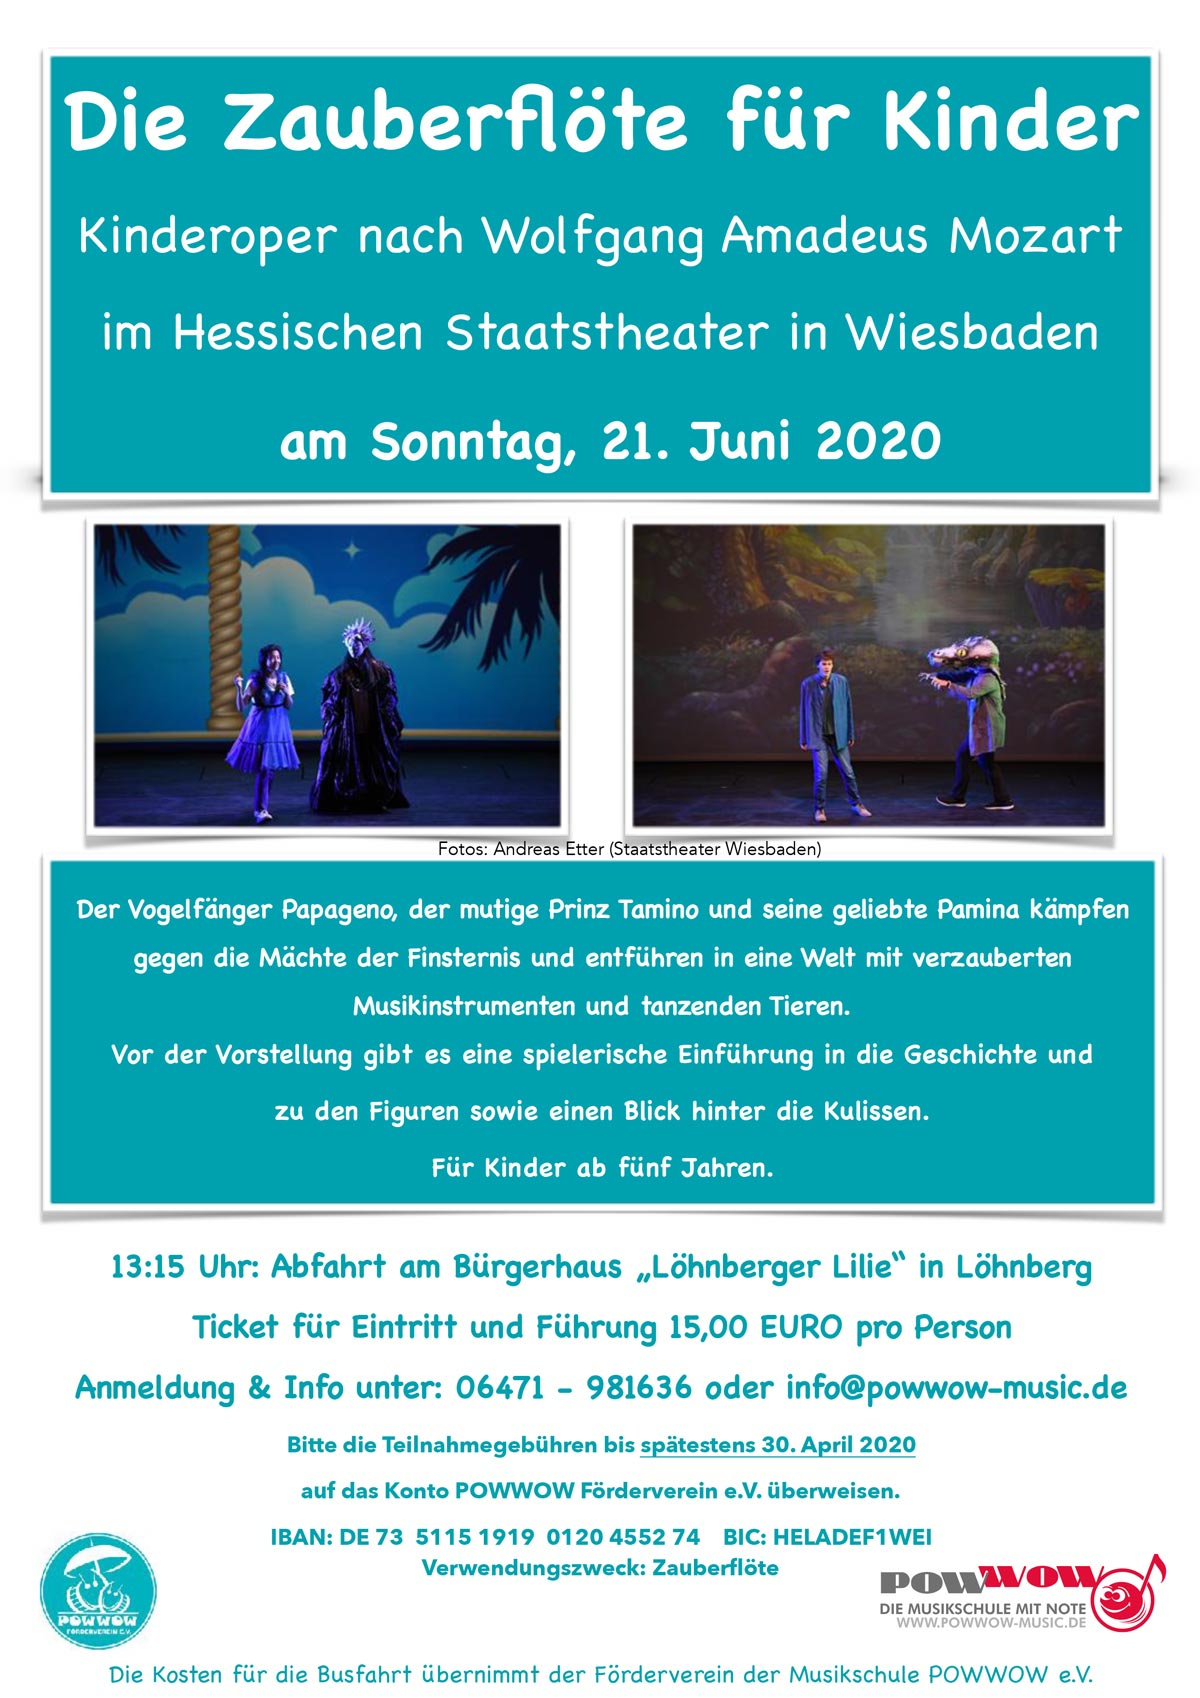 Auf zur Zauberflöte nach Wiesbaden – ein besonderes Musikerlebnis für Kinder ab 5 Jahren! 